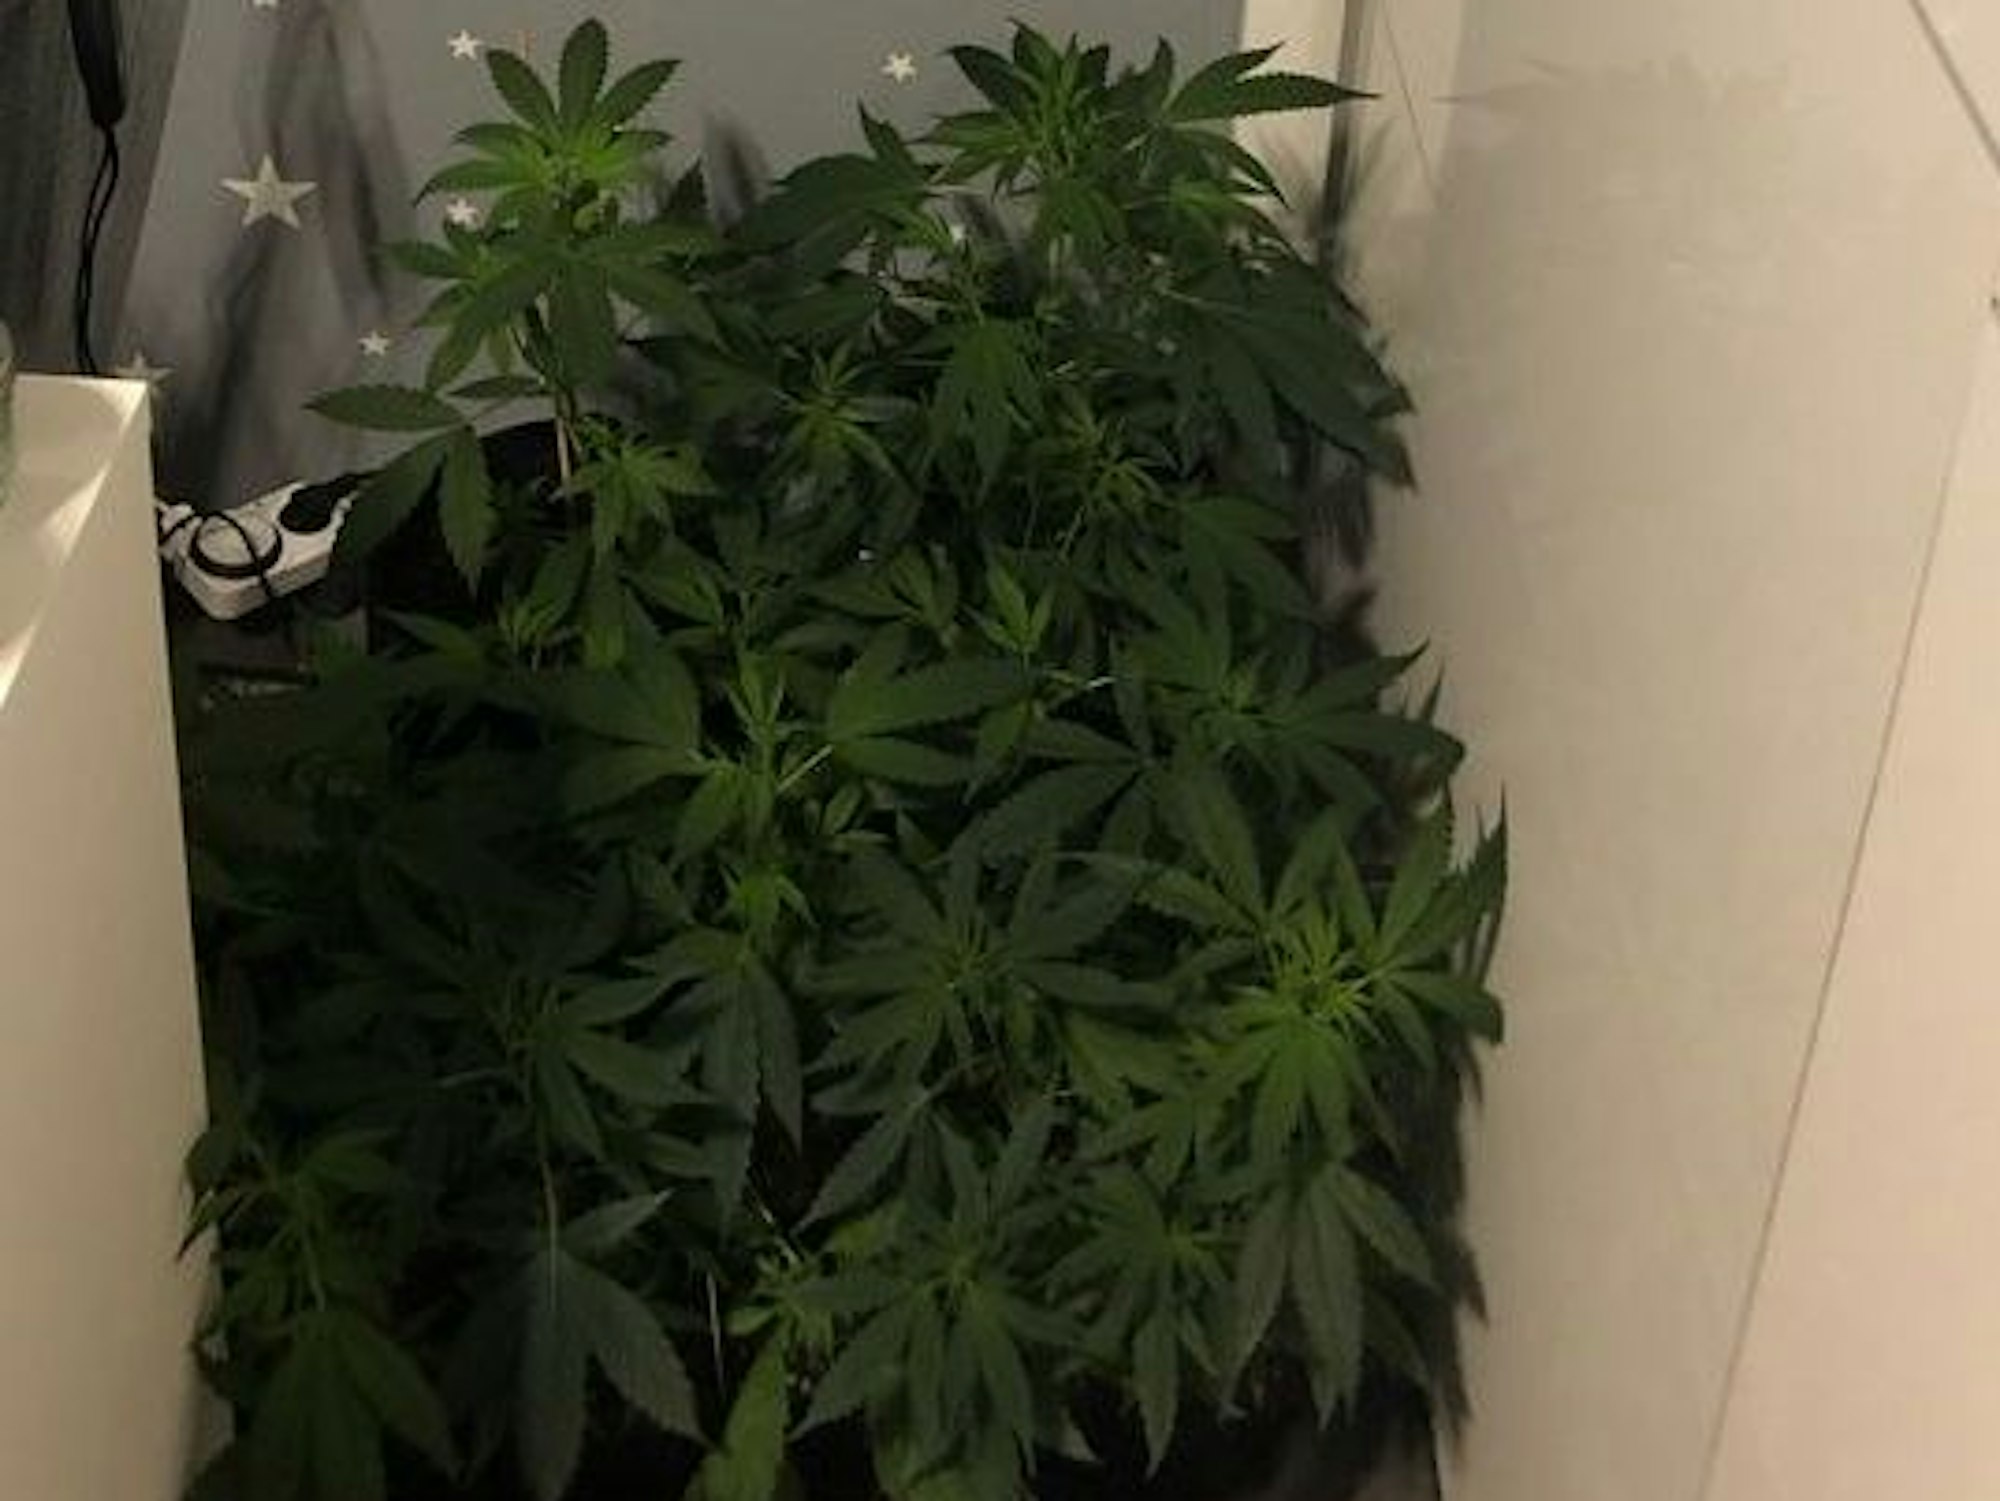 Das Bild zeigt Cannabispflanzen, die in der Wohnung einer Duisburgerin von der Polizei entdeckt wurden.